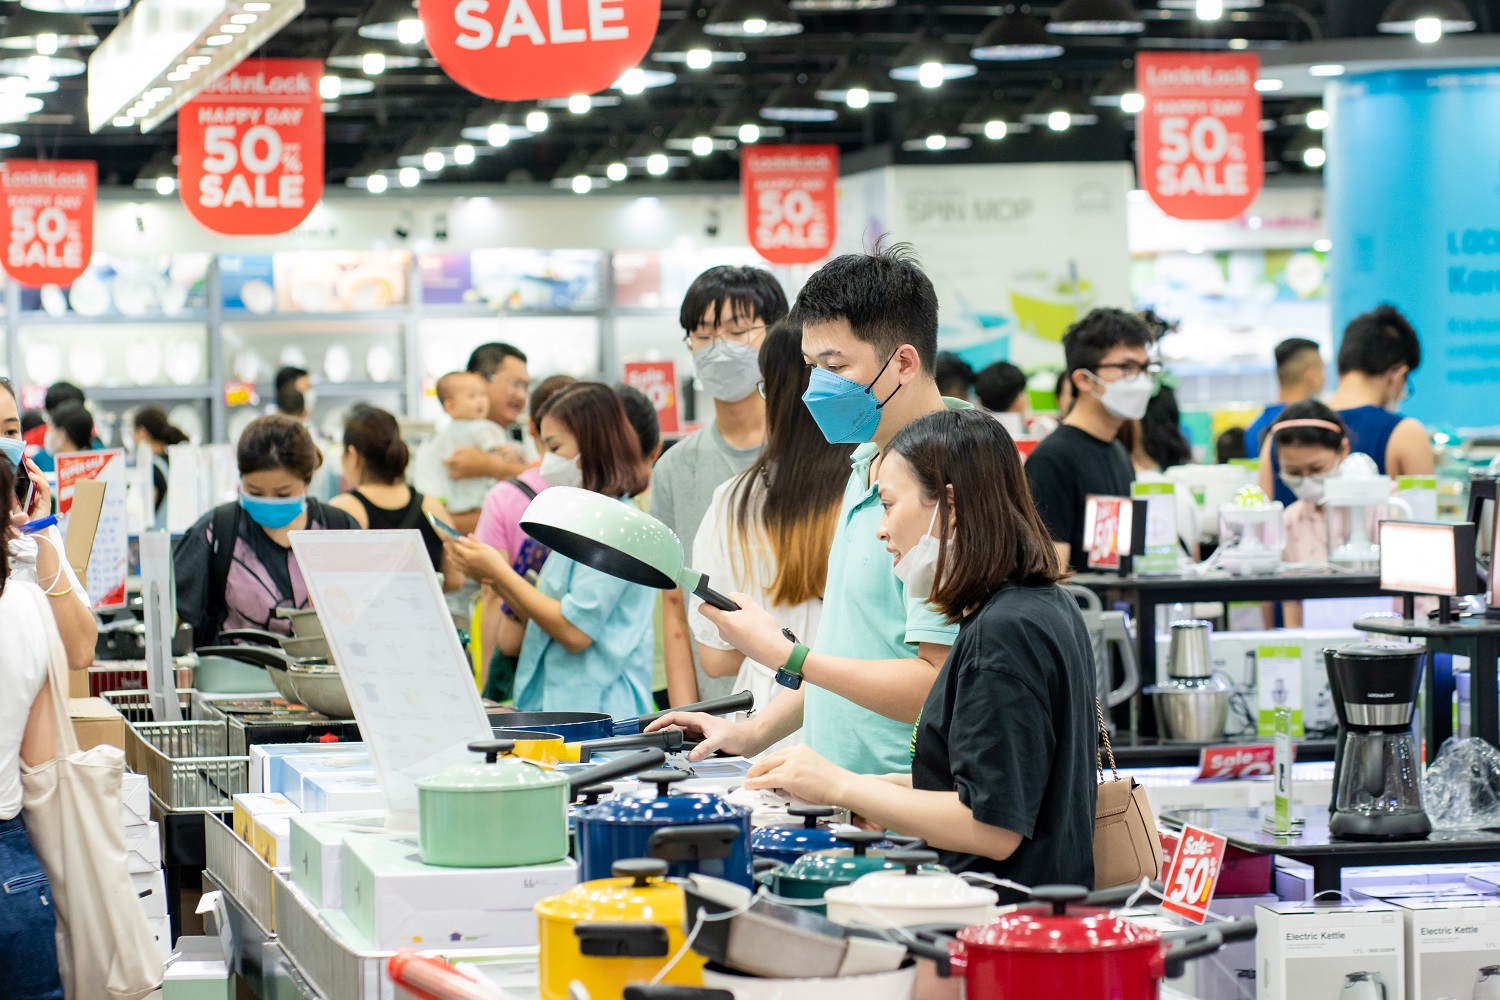  LocknLock – Thương hiệu gia dụng hàng đầu Hàn Quốc hiếm giảm giá cũng sale up to 50%++ trong Lễ hội Mua sắm Đỏ